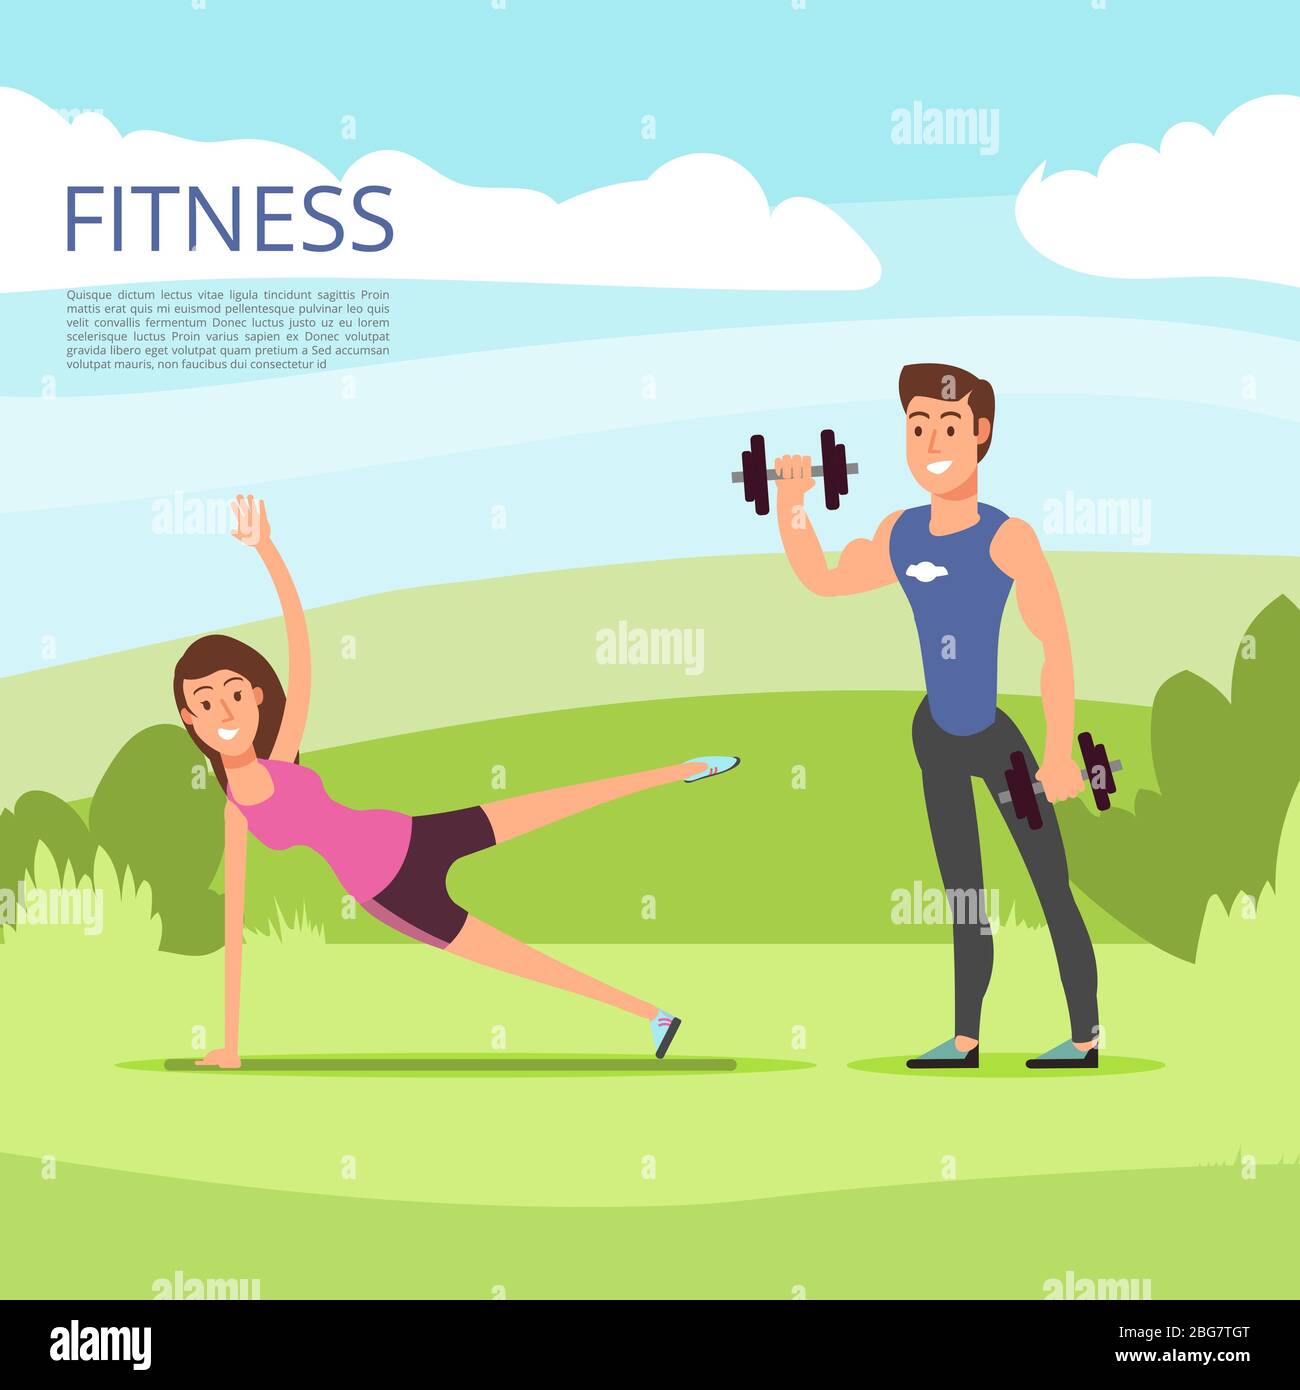 Sport all'aperto o allenamento fitness con personaggi di cartoni animati maschili e femminili. Illustrazione vettoriale Illustrazione Vettoriale